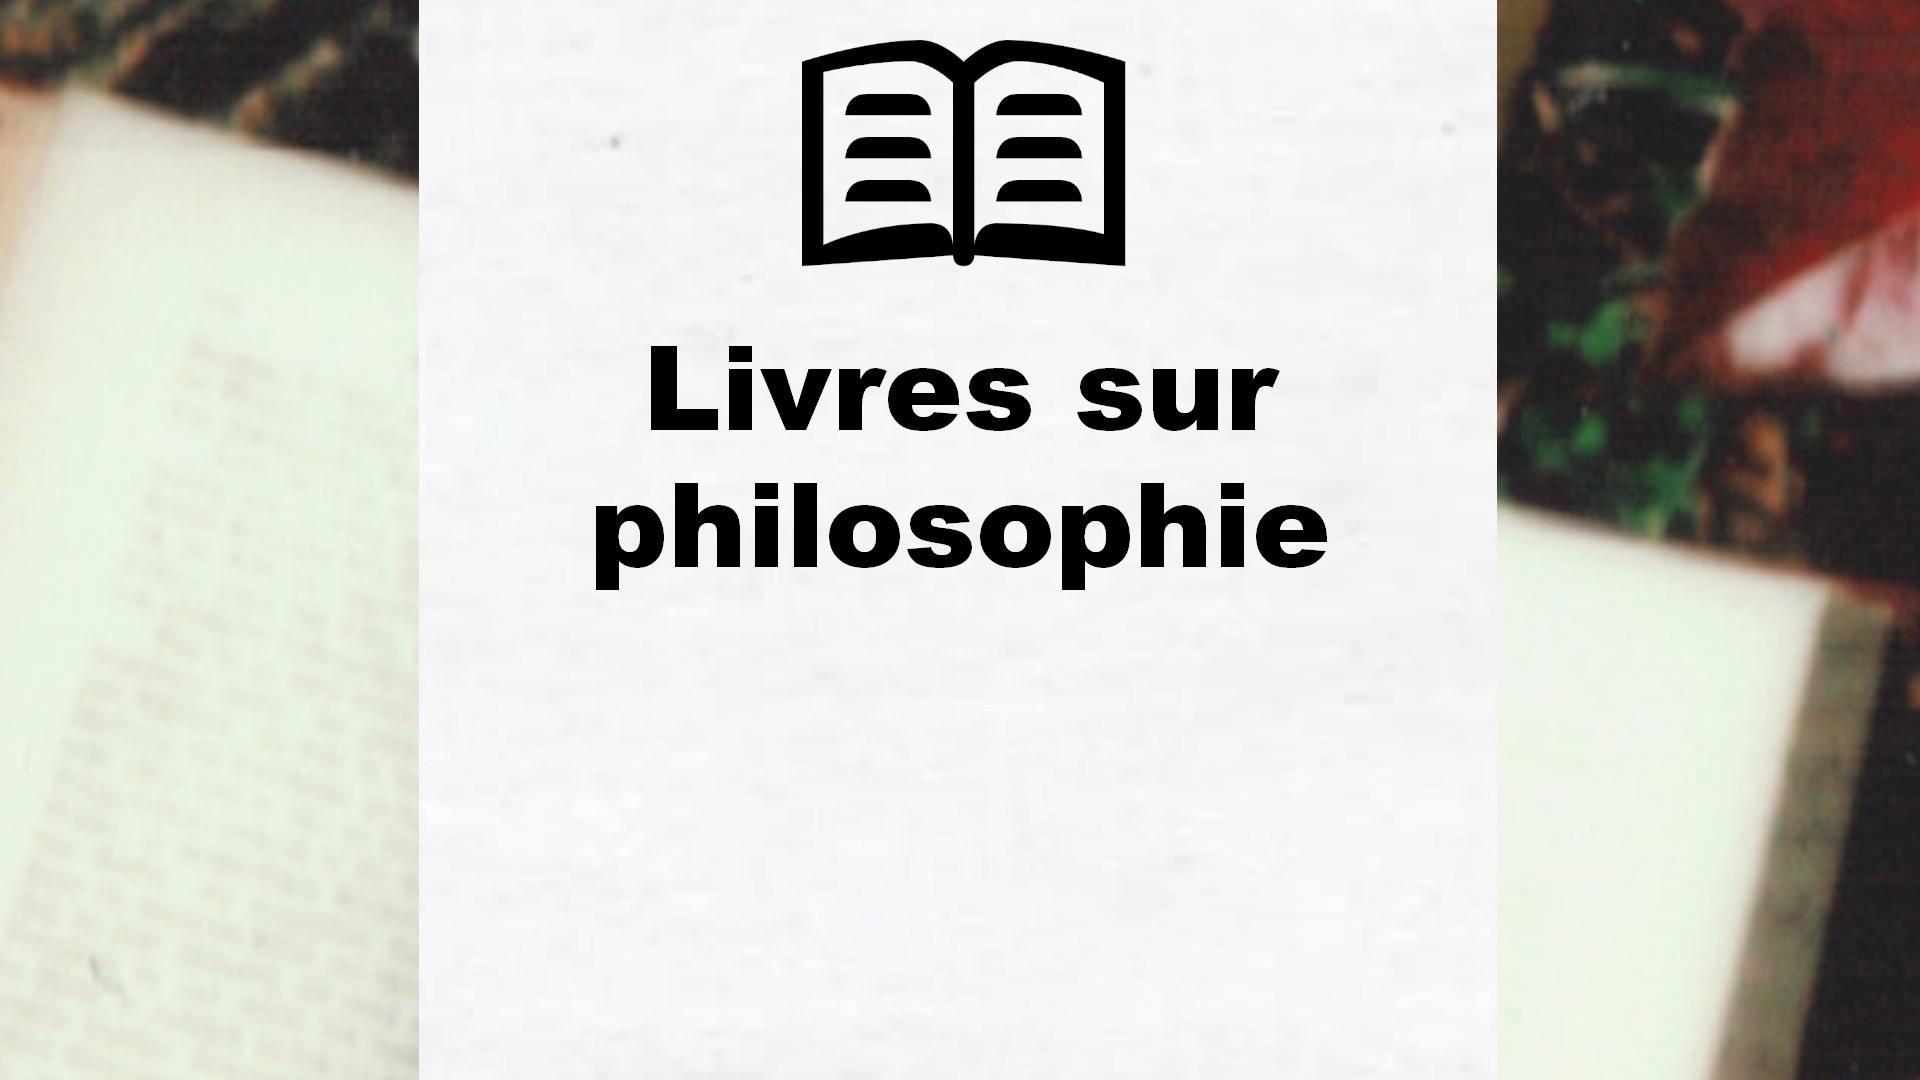 Livres sur philosophie